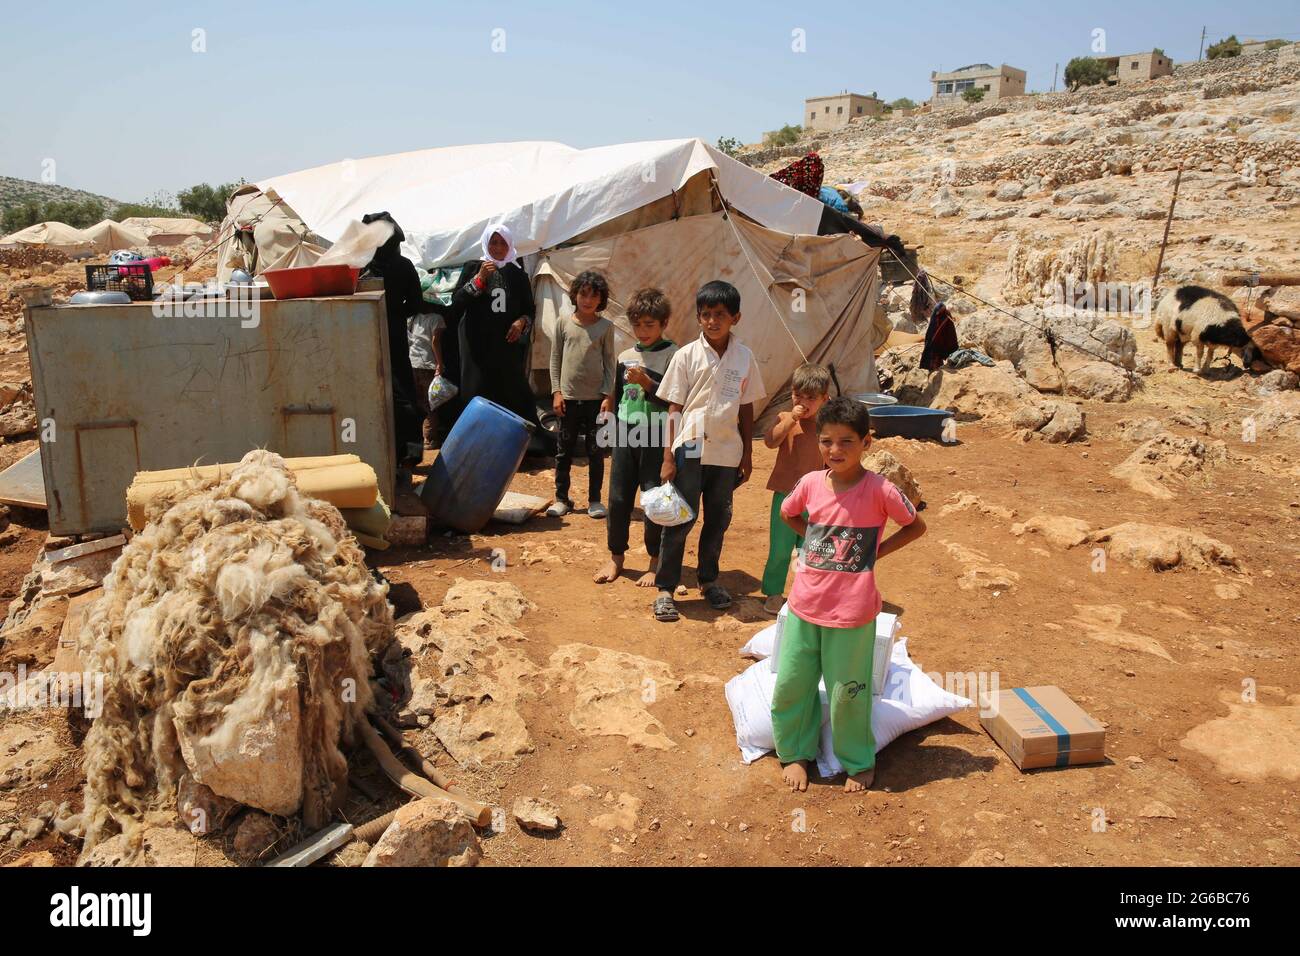 4 juillet 2021 : Alep, Syrie, 04 juillet 2021. Enfants dans un camp de personnes déplacées à Datrat Izza, au nord-ouest d'Alep. Plus de 2 millions de personnes déplacées vivent dans le nord-ouest de la Syrie, souvent dans des camps surpeuplés dépourvus d'infrastructures et d'installations de base. Ils comptent beaucoup sur la distribution de l'aide qui les atteint par le passage de Bab al-Hawa depuis la Turquie comme la seule voie autorisée pour l'aide humanitaire coordonnée par l'ONU. Les organisations humanitaires ont averti qu'une énorme crise humanitaire serait confrontée aux personnes déplacées, mais aussi au reste de la population dans la région nord-ouest de la Syrie si l'ouverture était possible Banque D'Images